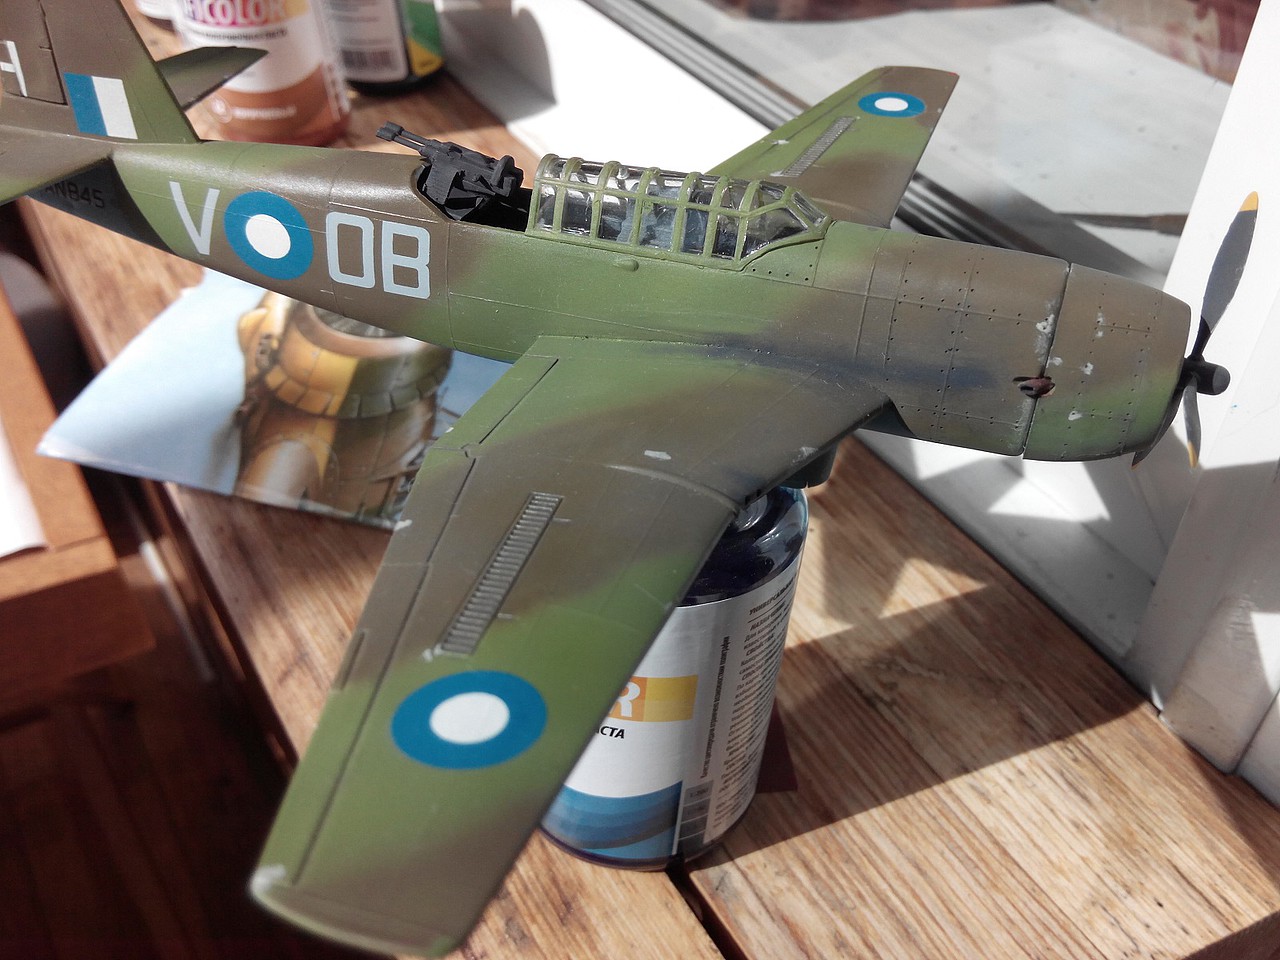 target model airplanes